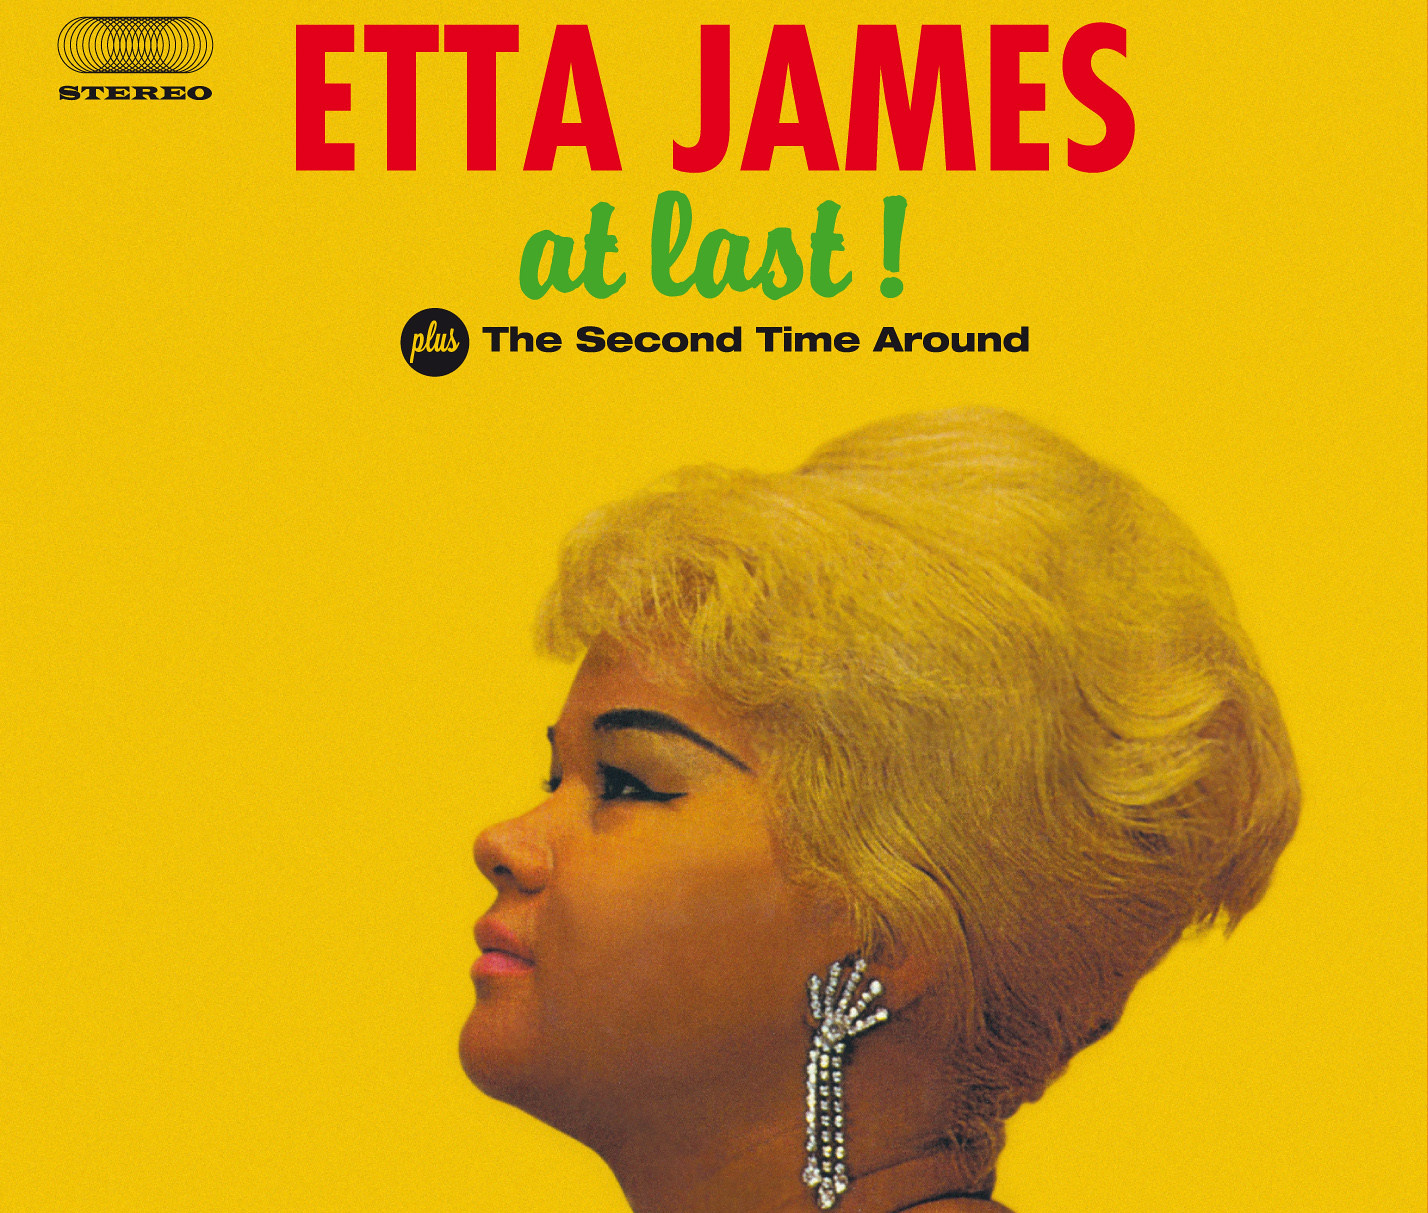 Etta James facts